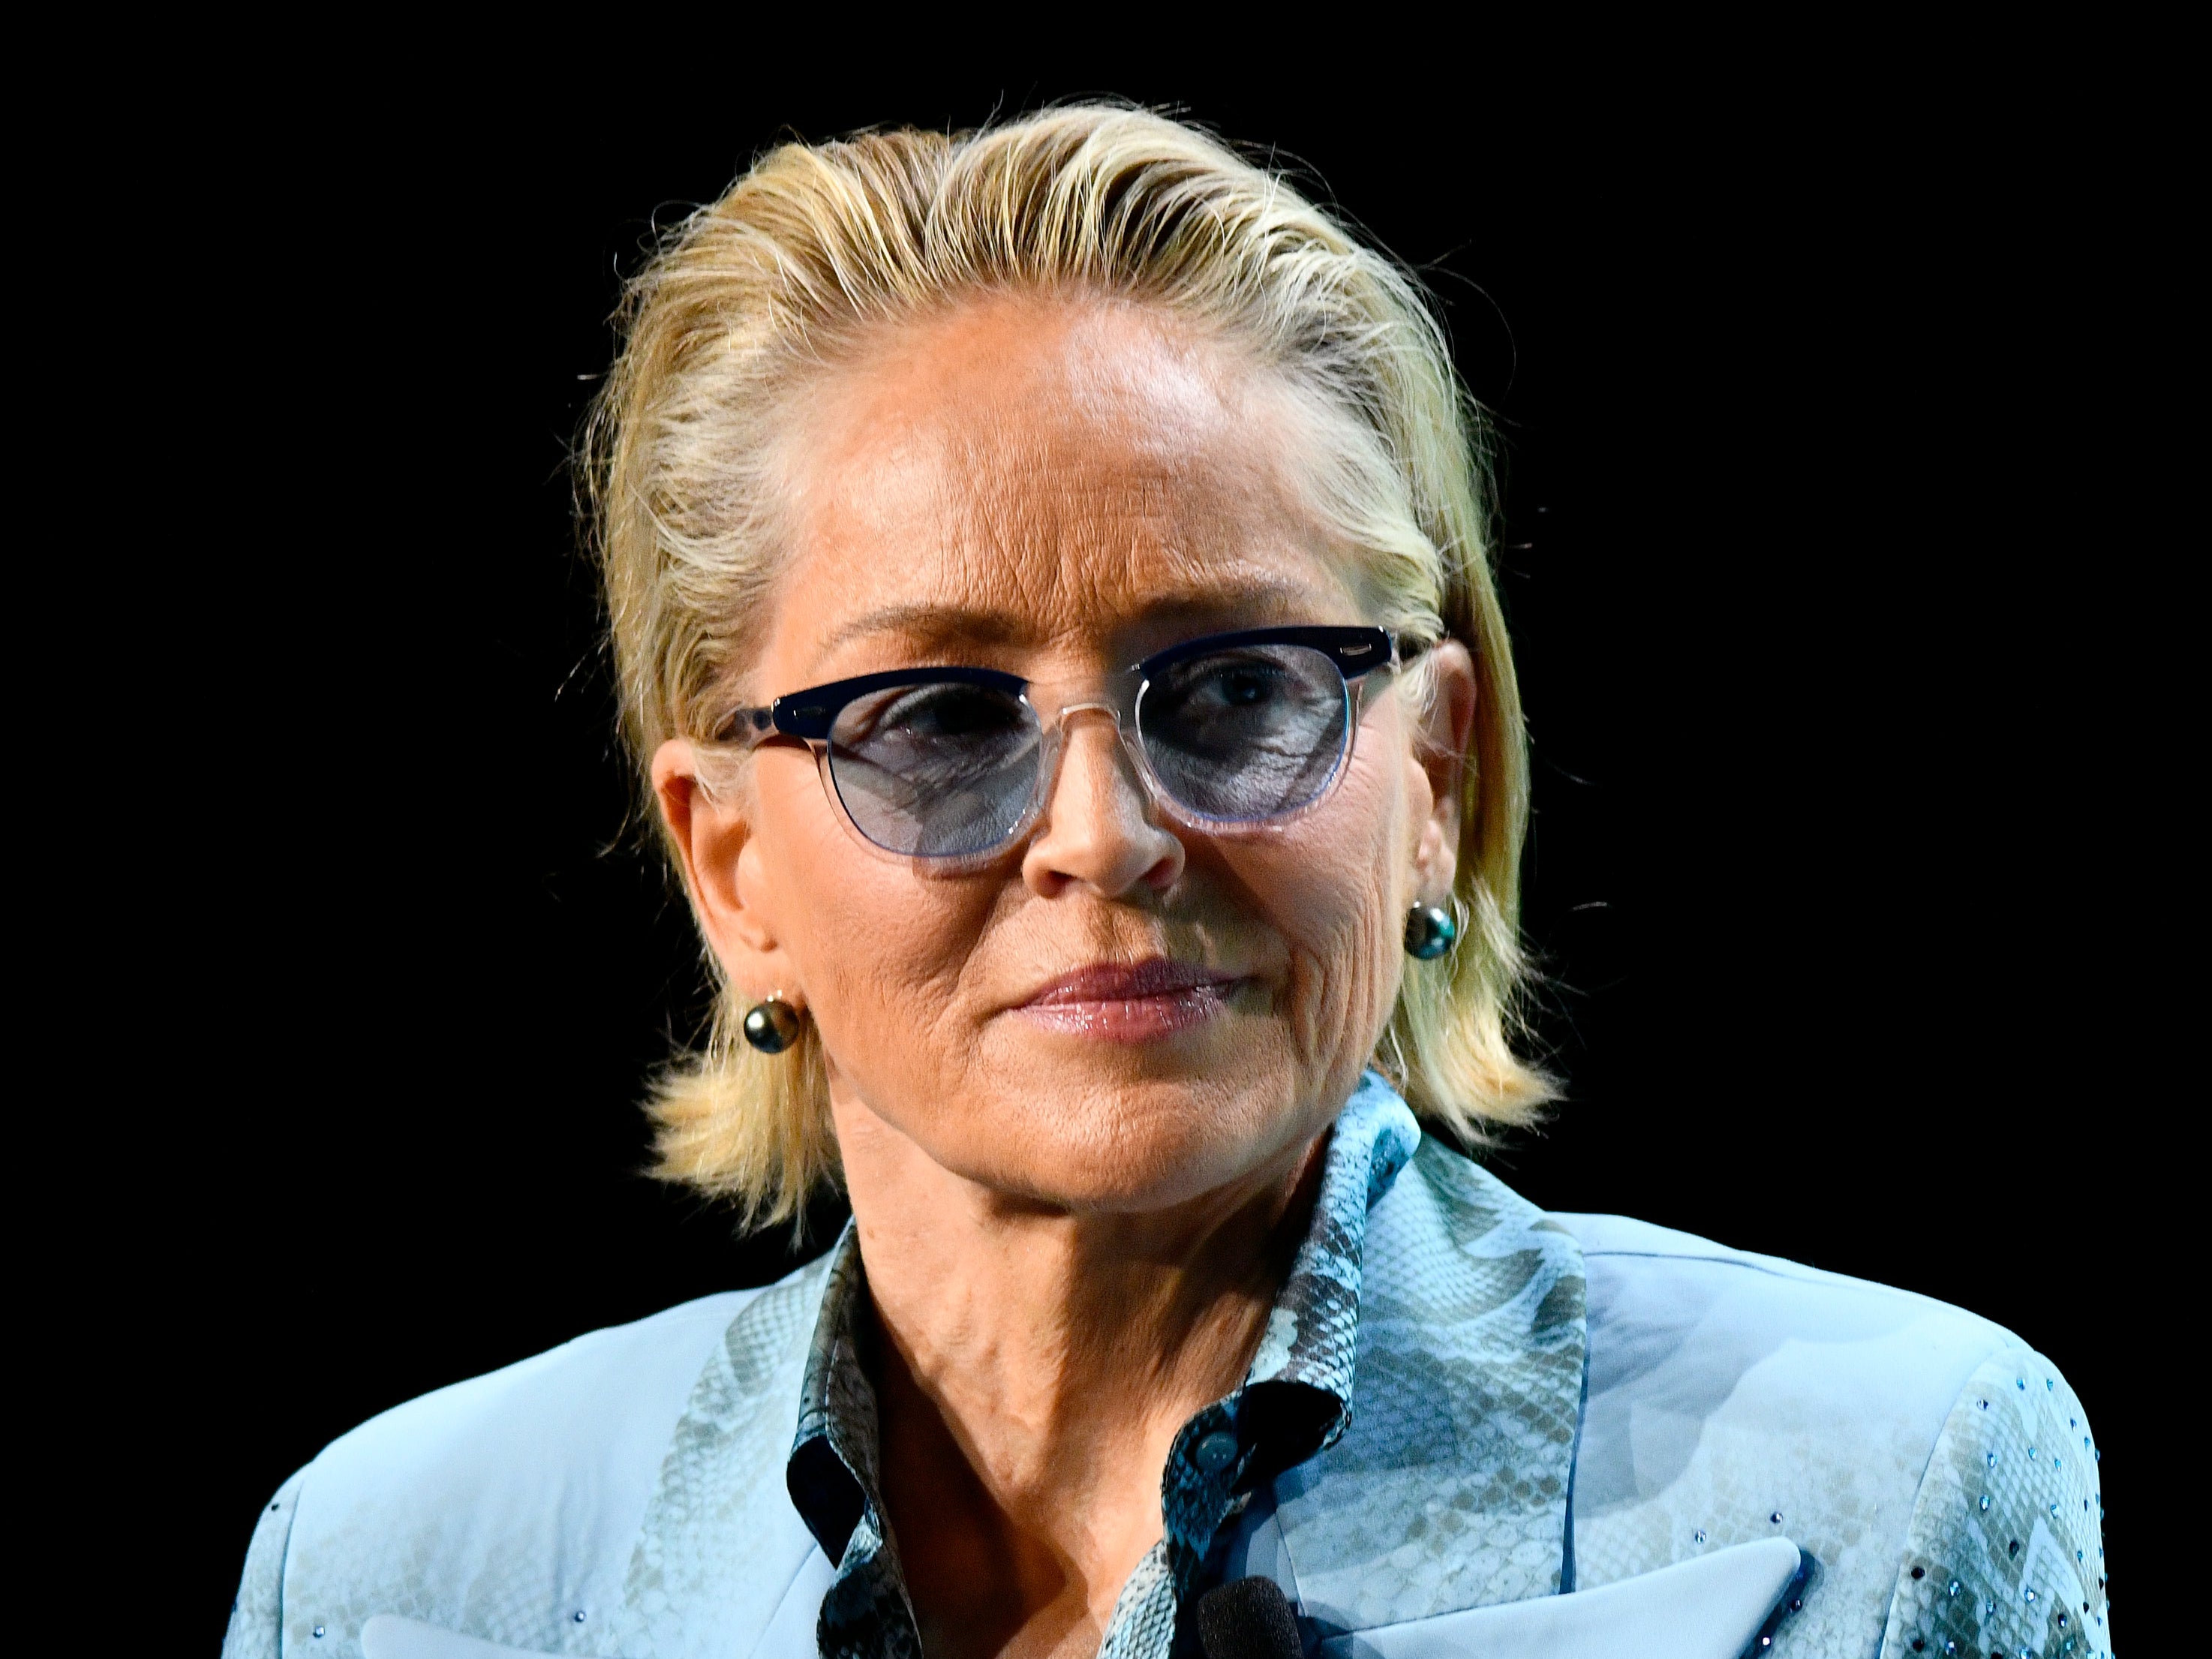 Sharon Stone is not a fan of Johnny Depp’s art skills